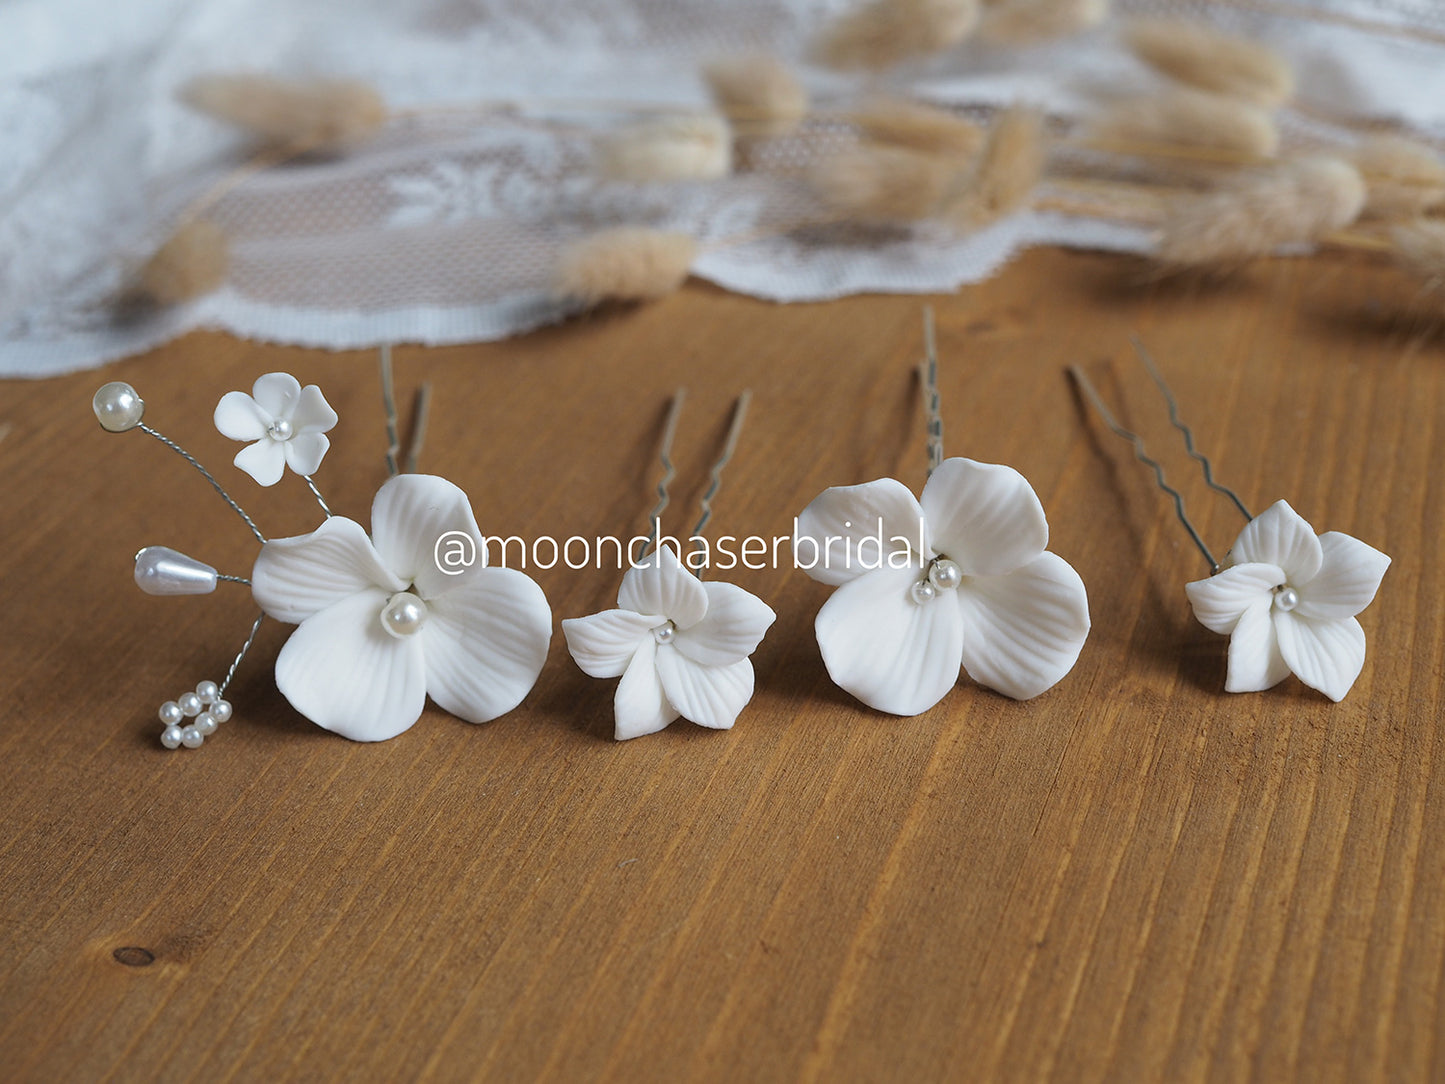 Ann-White flower hair pins 4 pcs, Wedding hair piece, Bride hair accessories, Floral wedding hairpiece, bridal floral hair pins